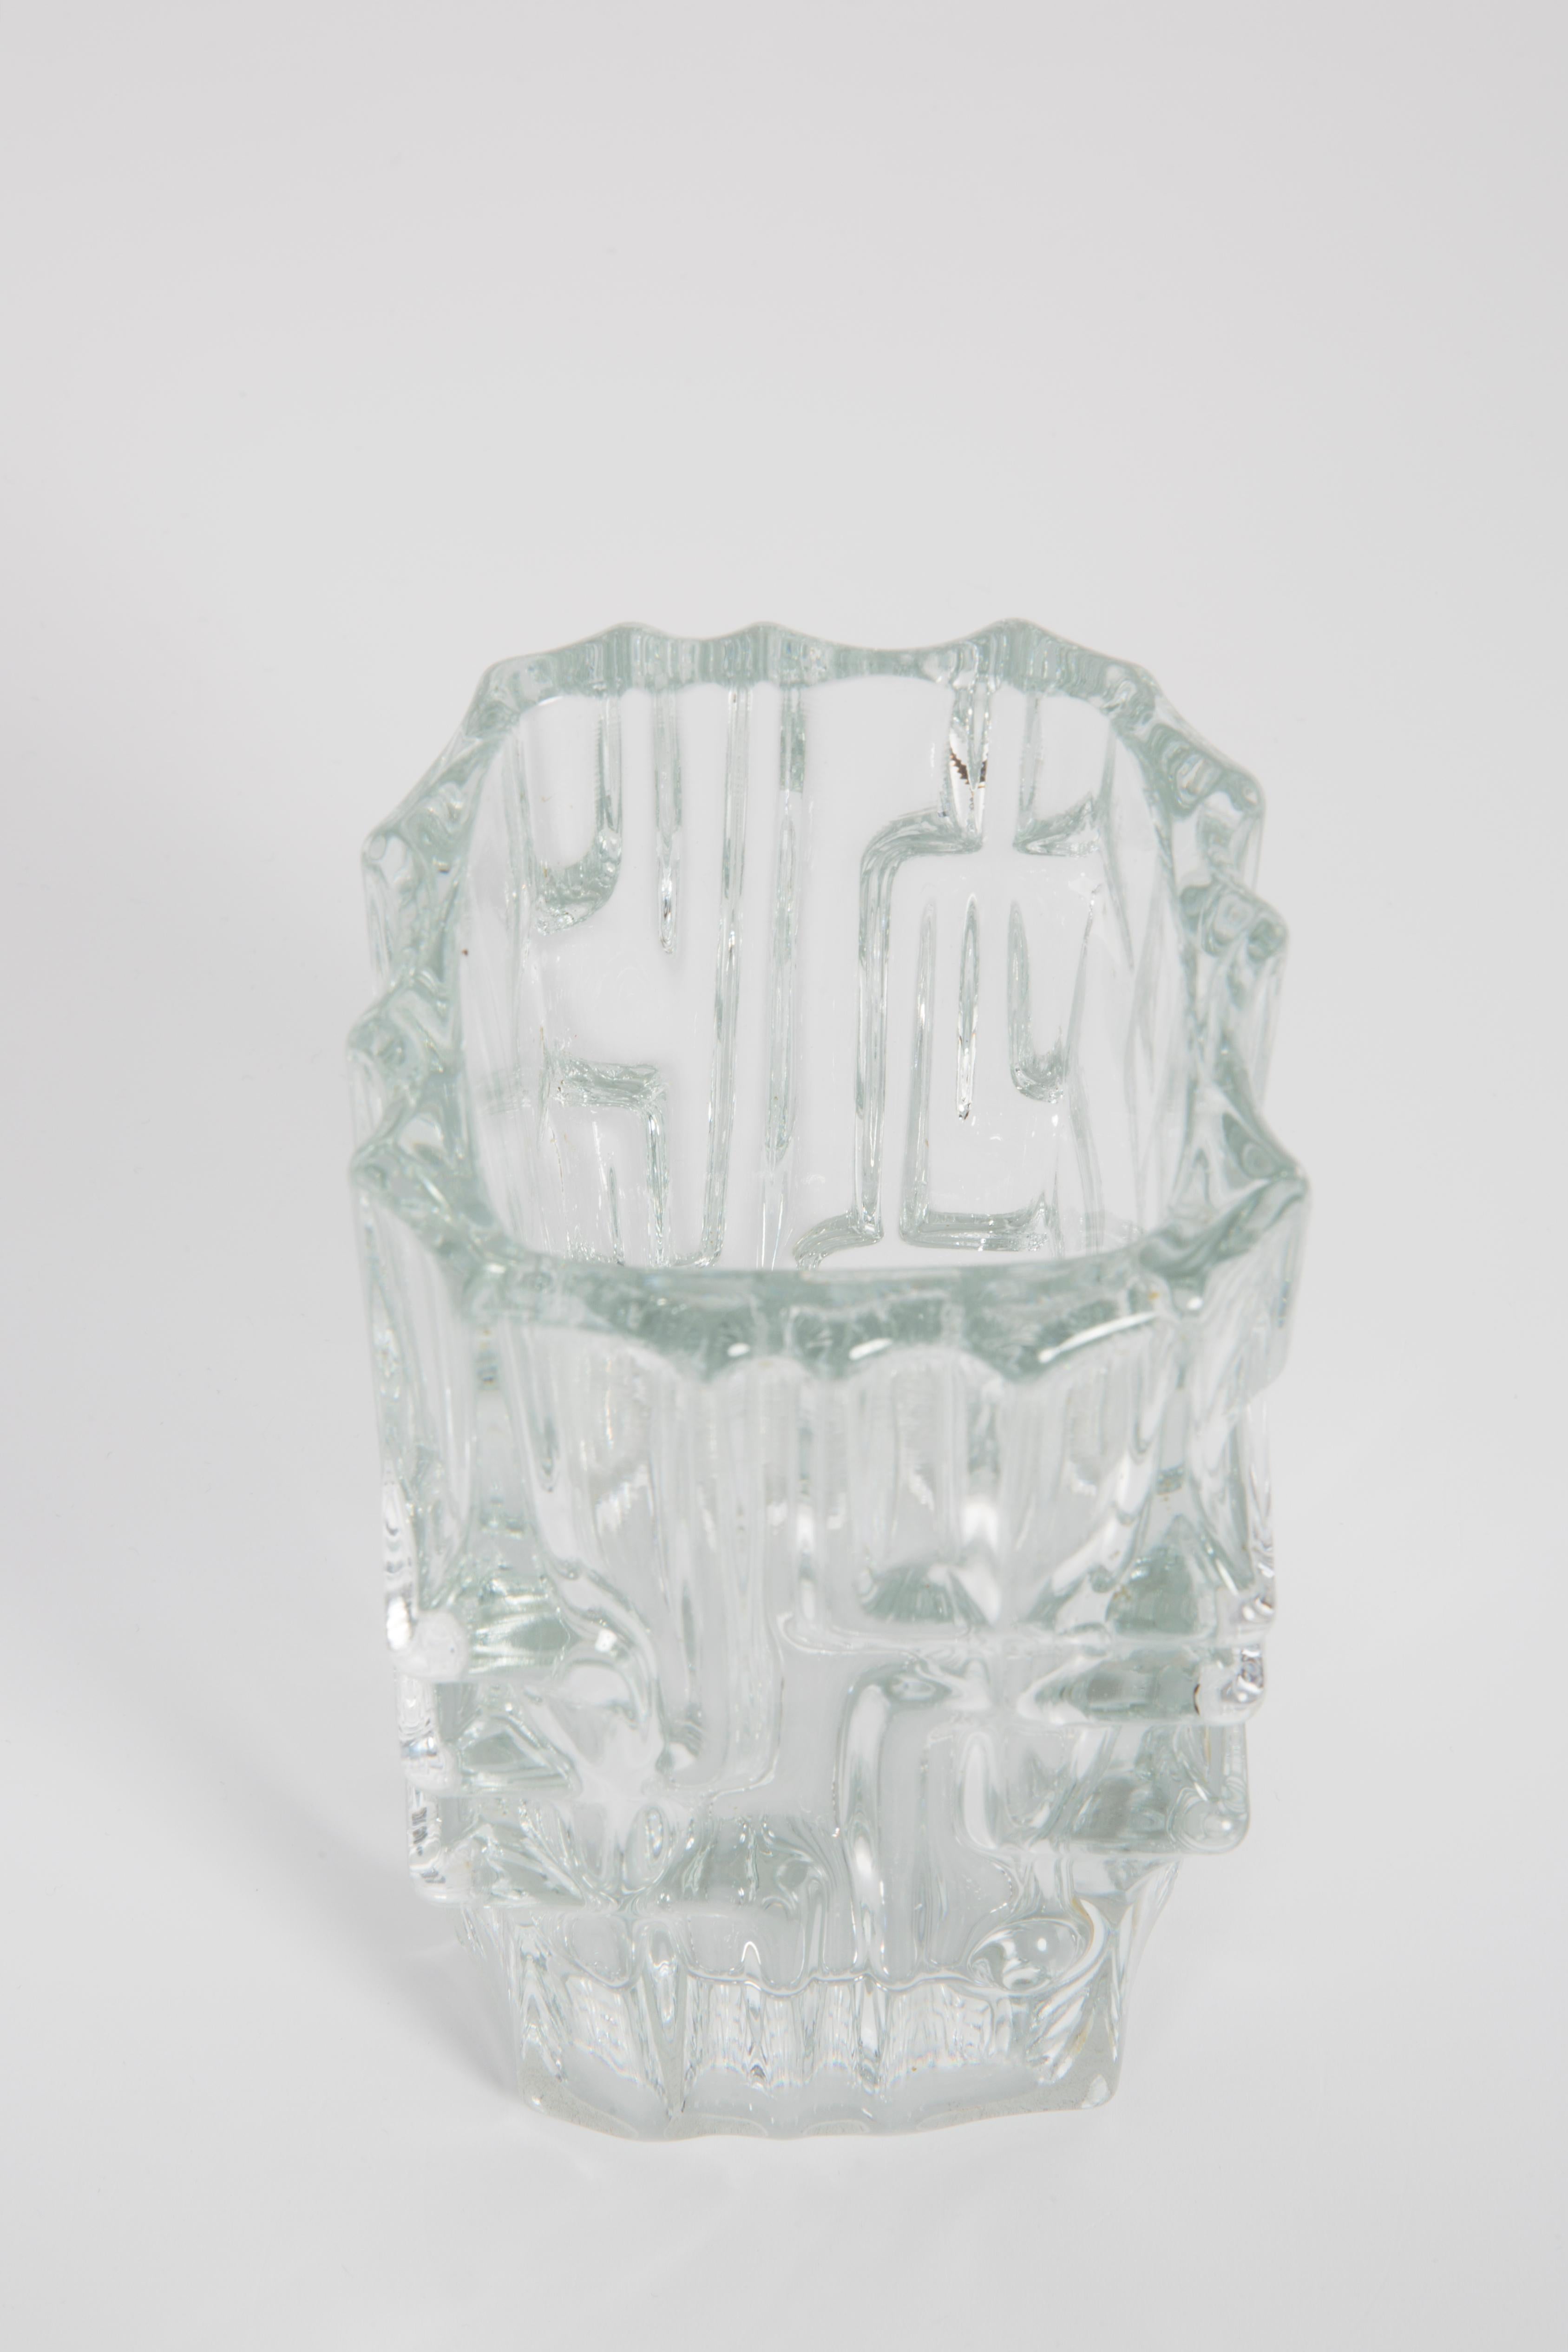 Glass White Vase by Vladislav Urban for Sklo Union, 20th Century, Europe, 1960s